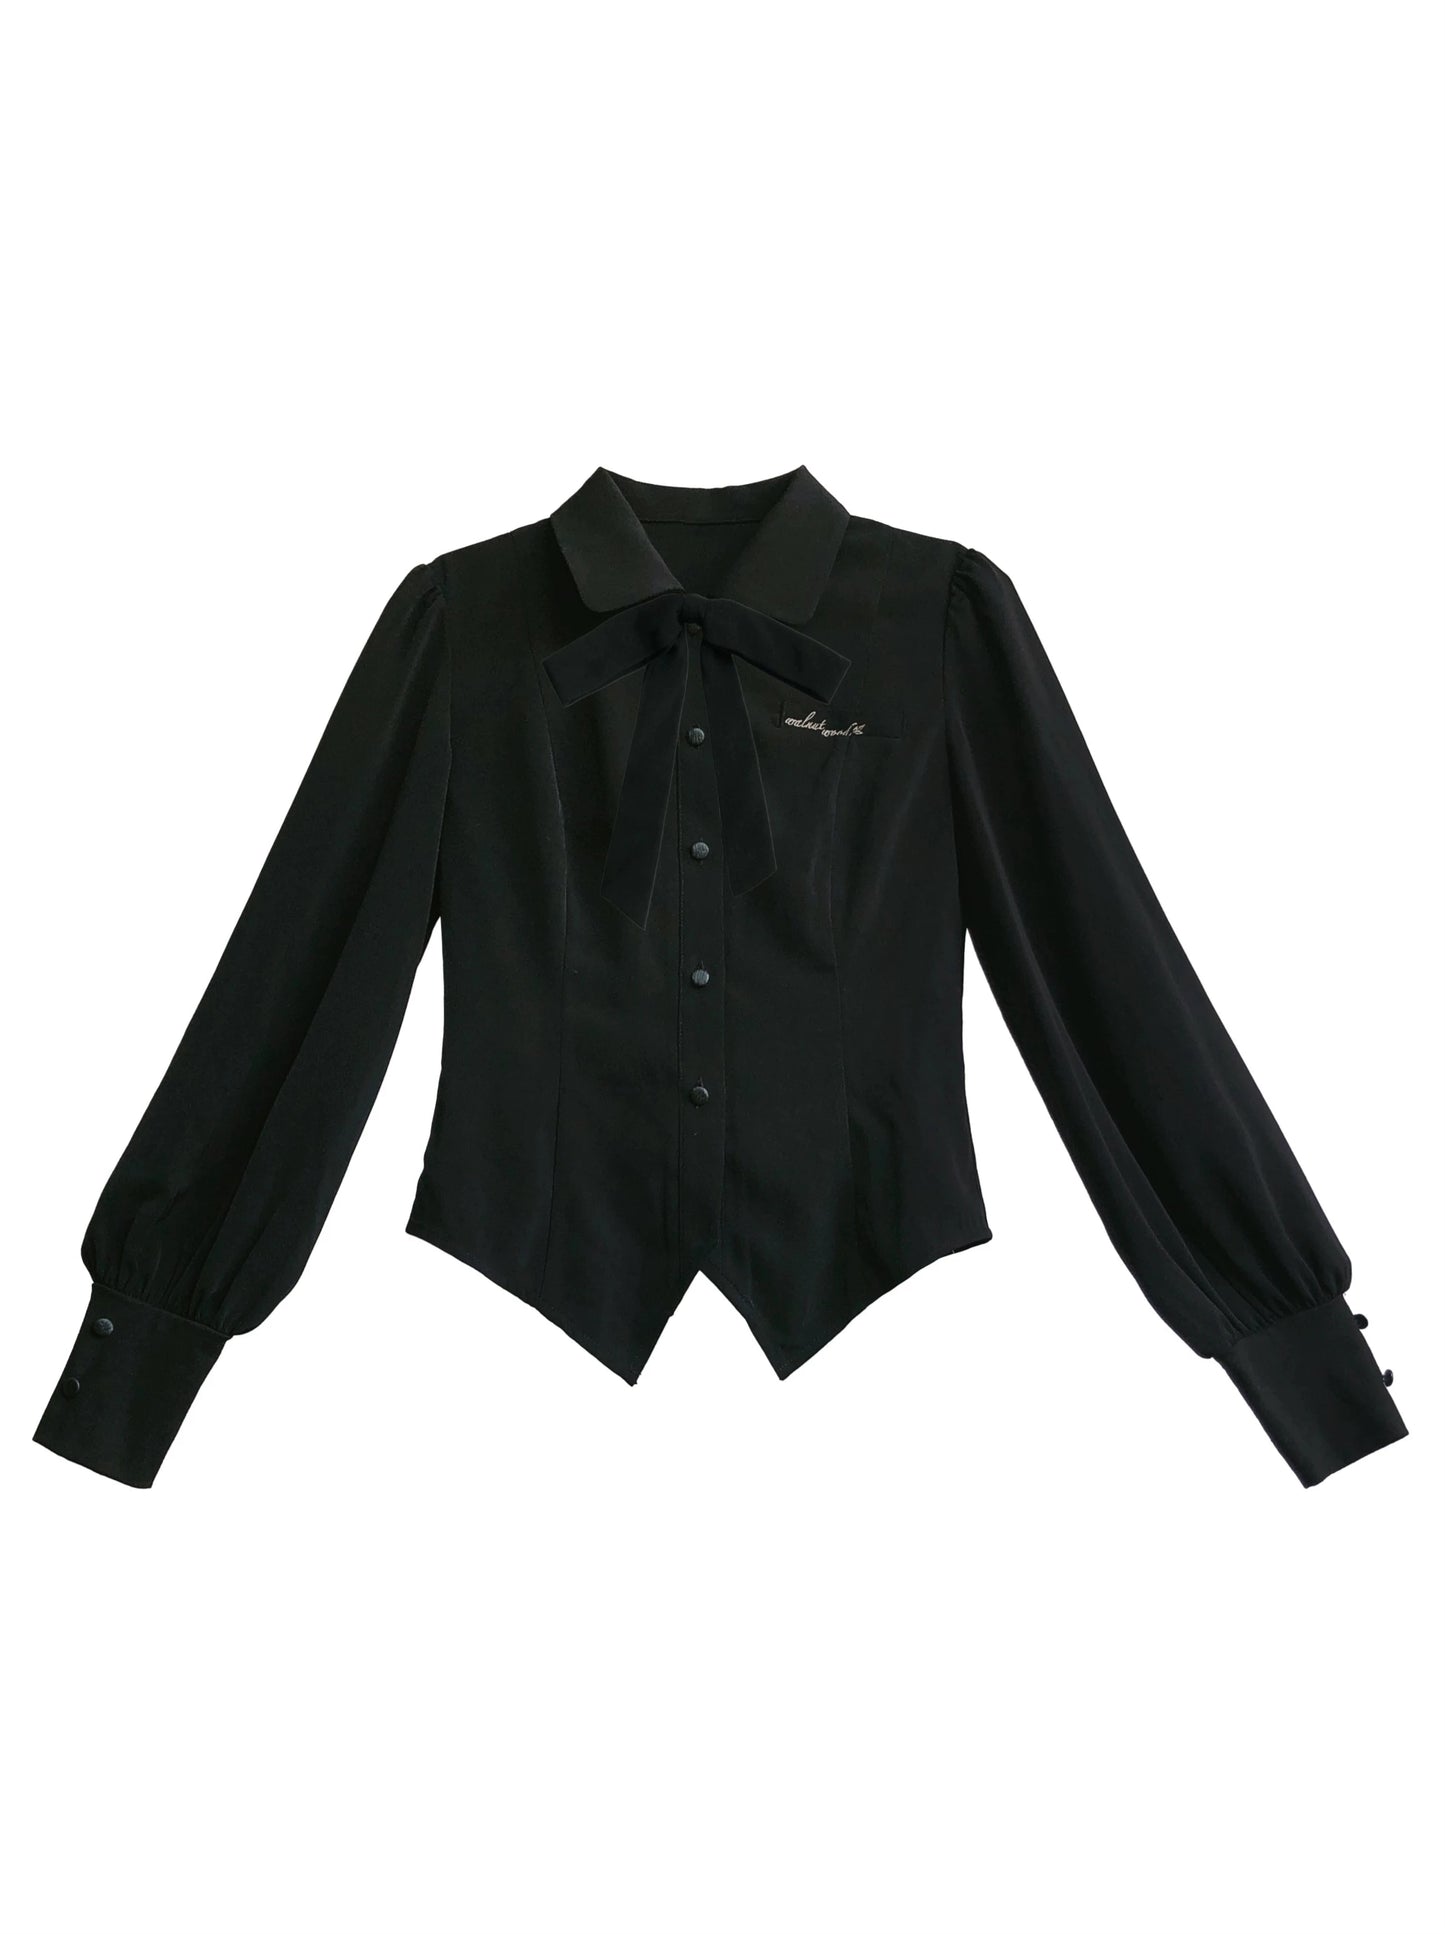 Élégante chemise rétro noire à manches volumineuses et rubans + jupe à bretelles à volants